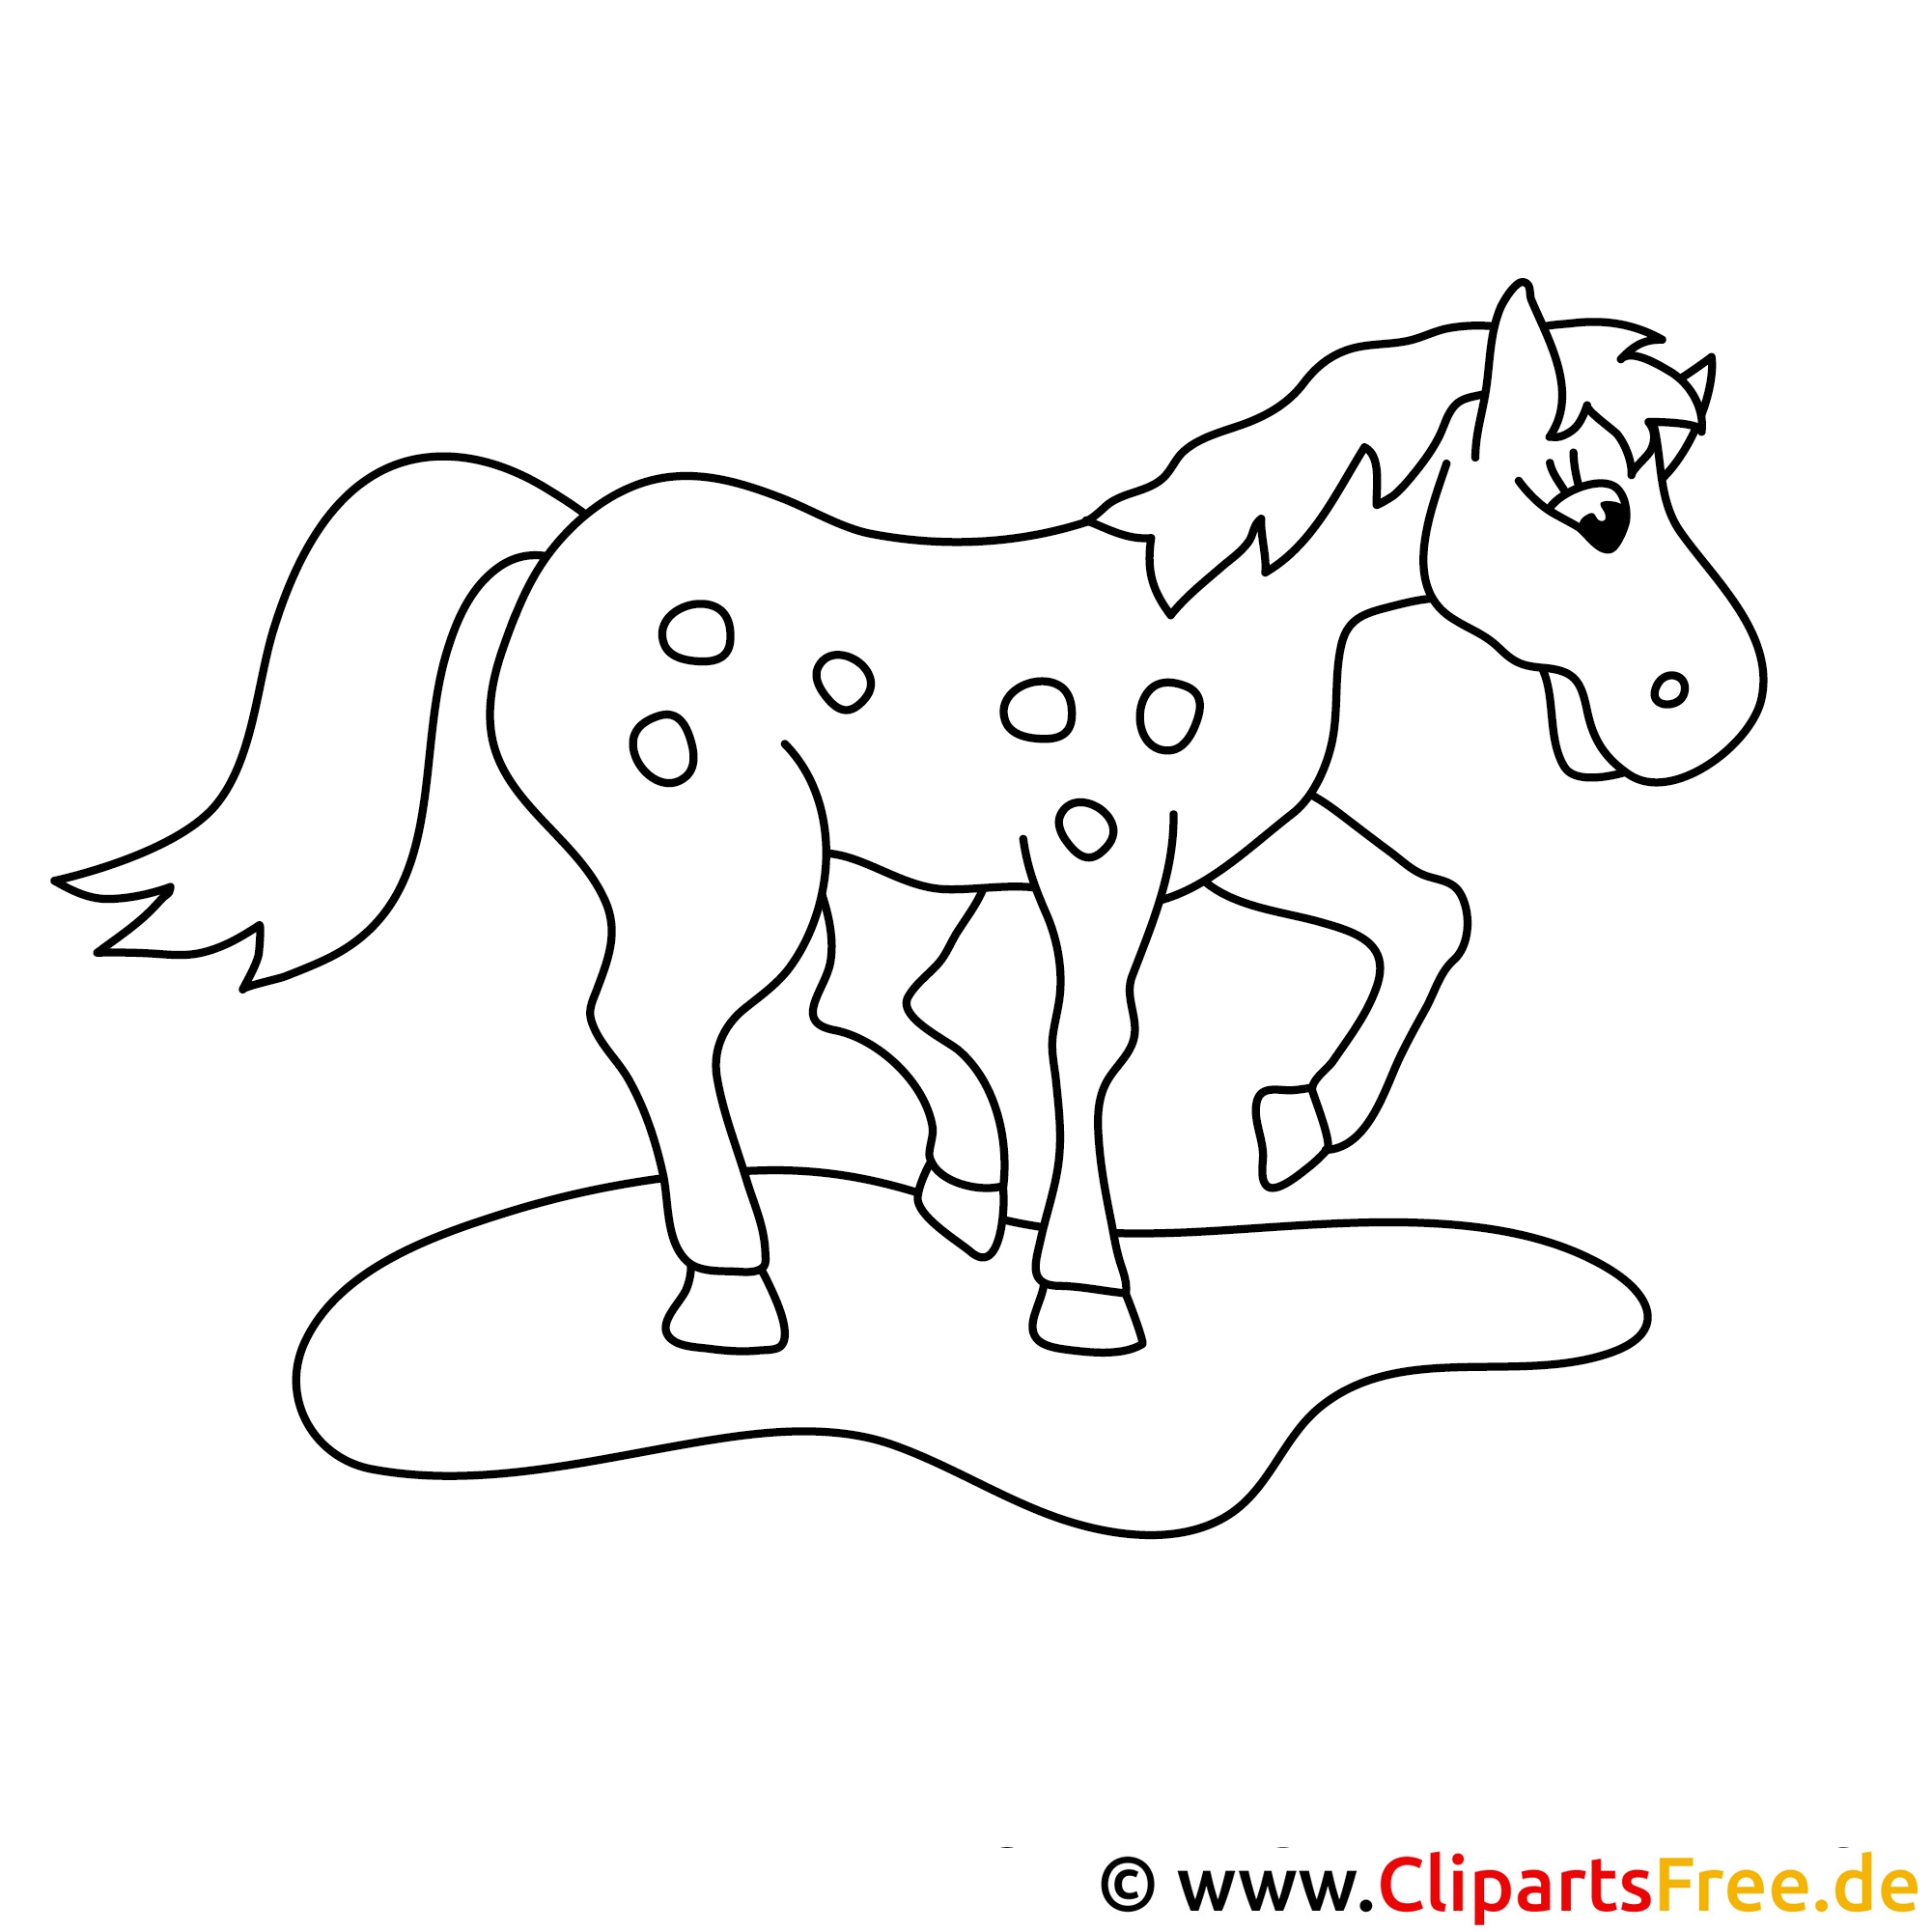 Раскраска лошадка для малышей 2-3 лет. Раскраска лошадка для детей 3-4 лет. Лошадка рисунок для детей карандашом. Раскраска лошадка для детей 5-6 лет.